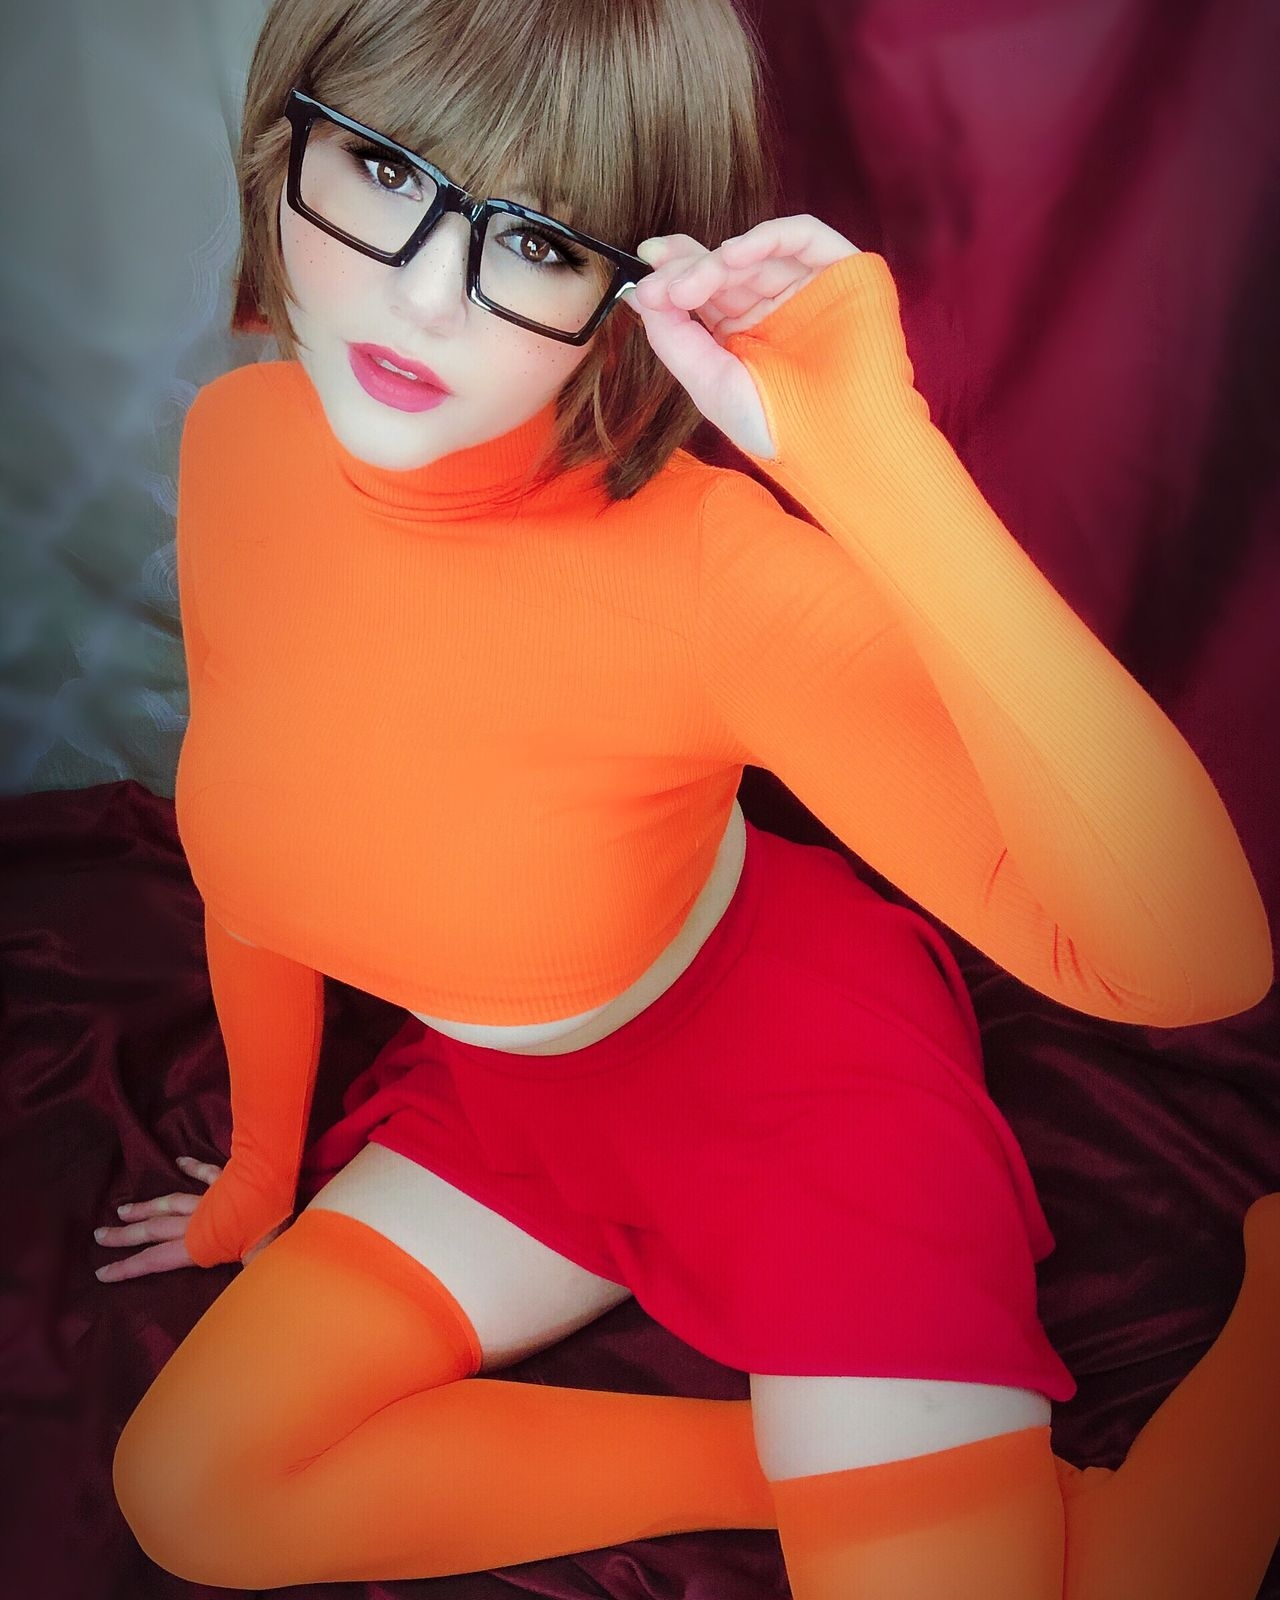 Kobaebeefboo - Velma Dinkley 2